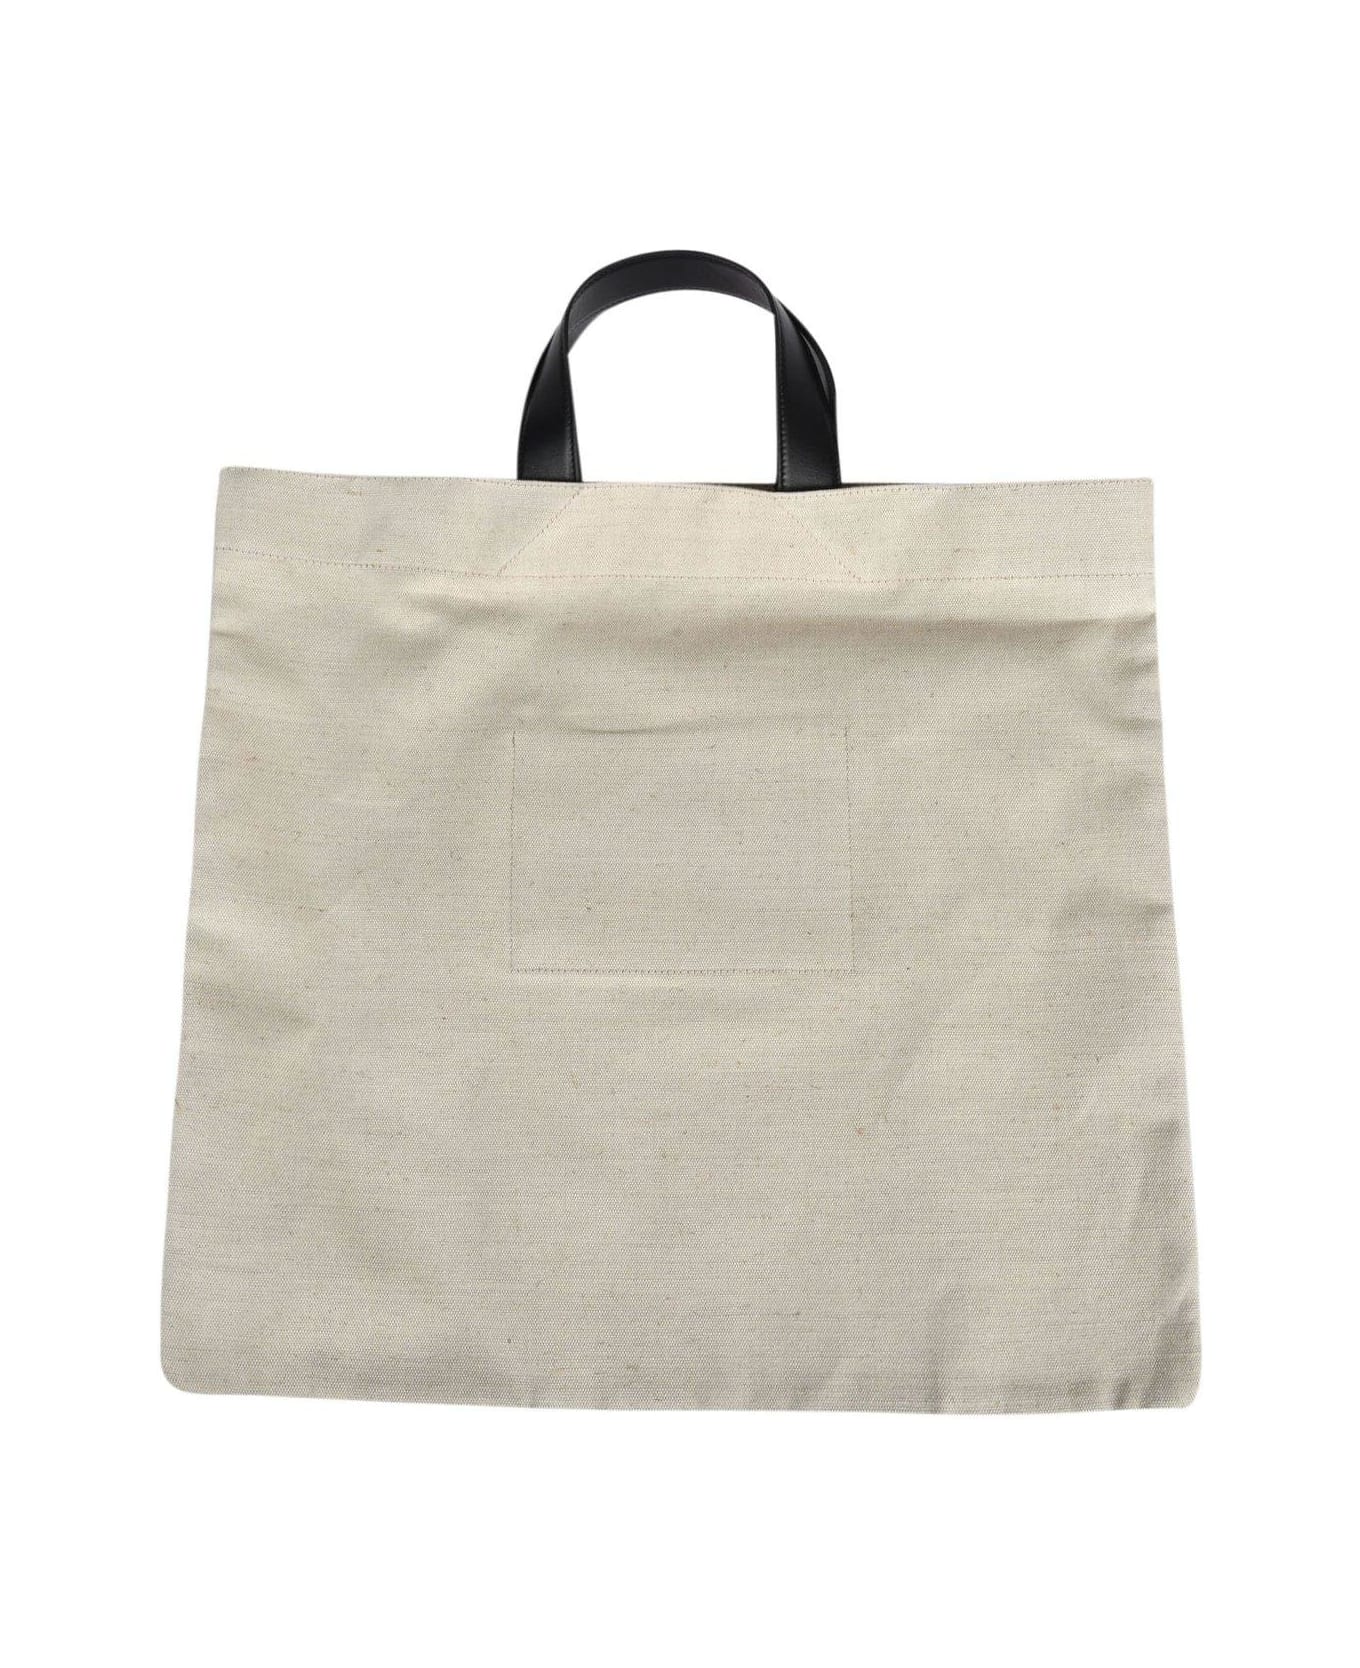 Jil Sander Logo Printed Large Tote Bag - Beige